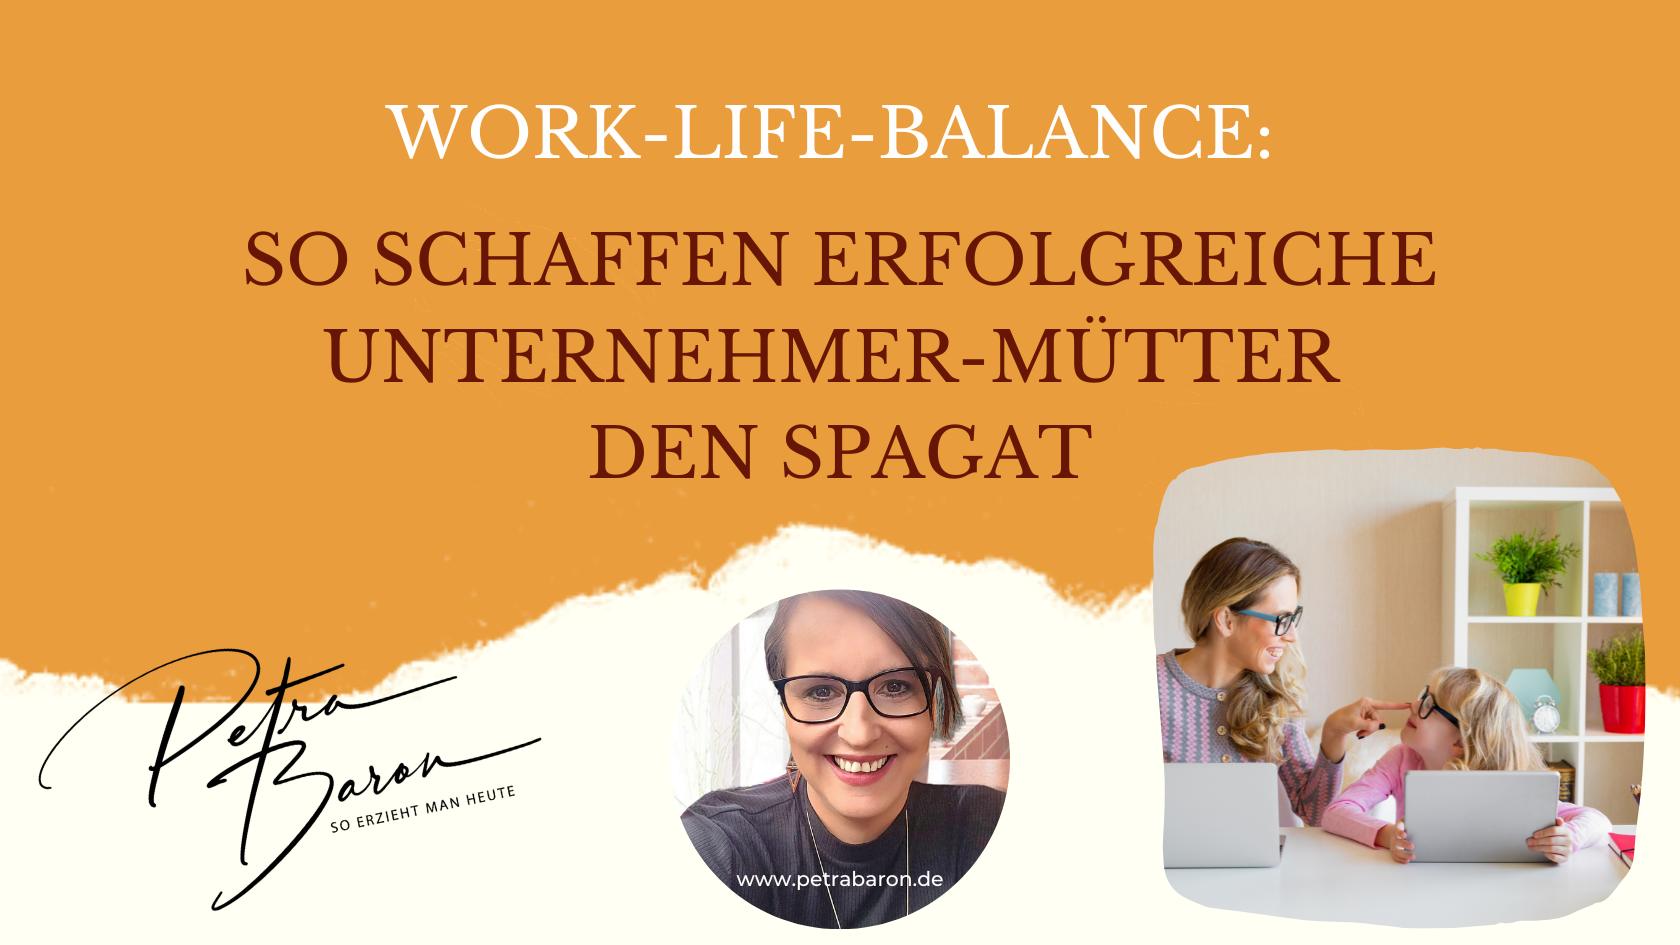 Work-Life-Balance: So schaffen erfolgreiche Unternehmer-Mütter den Spagat